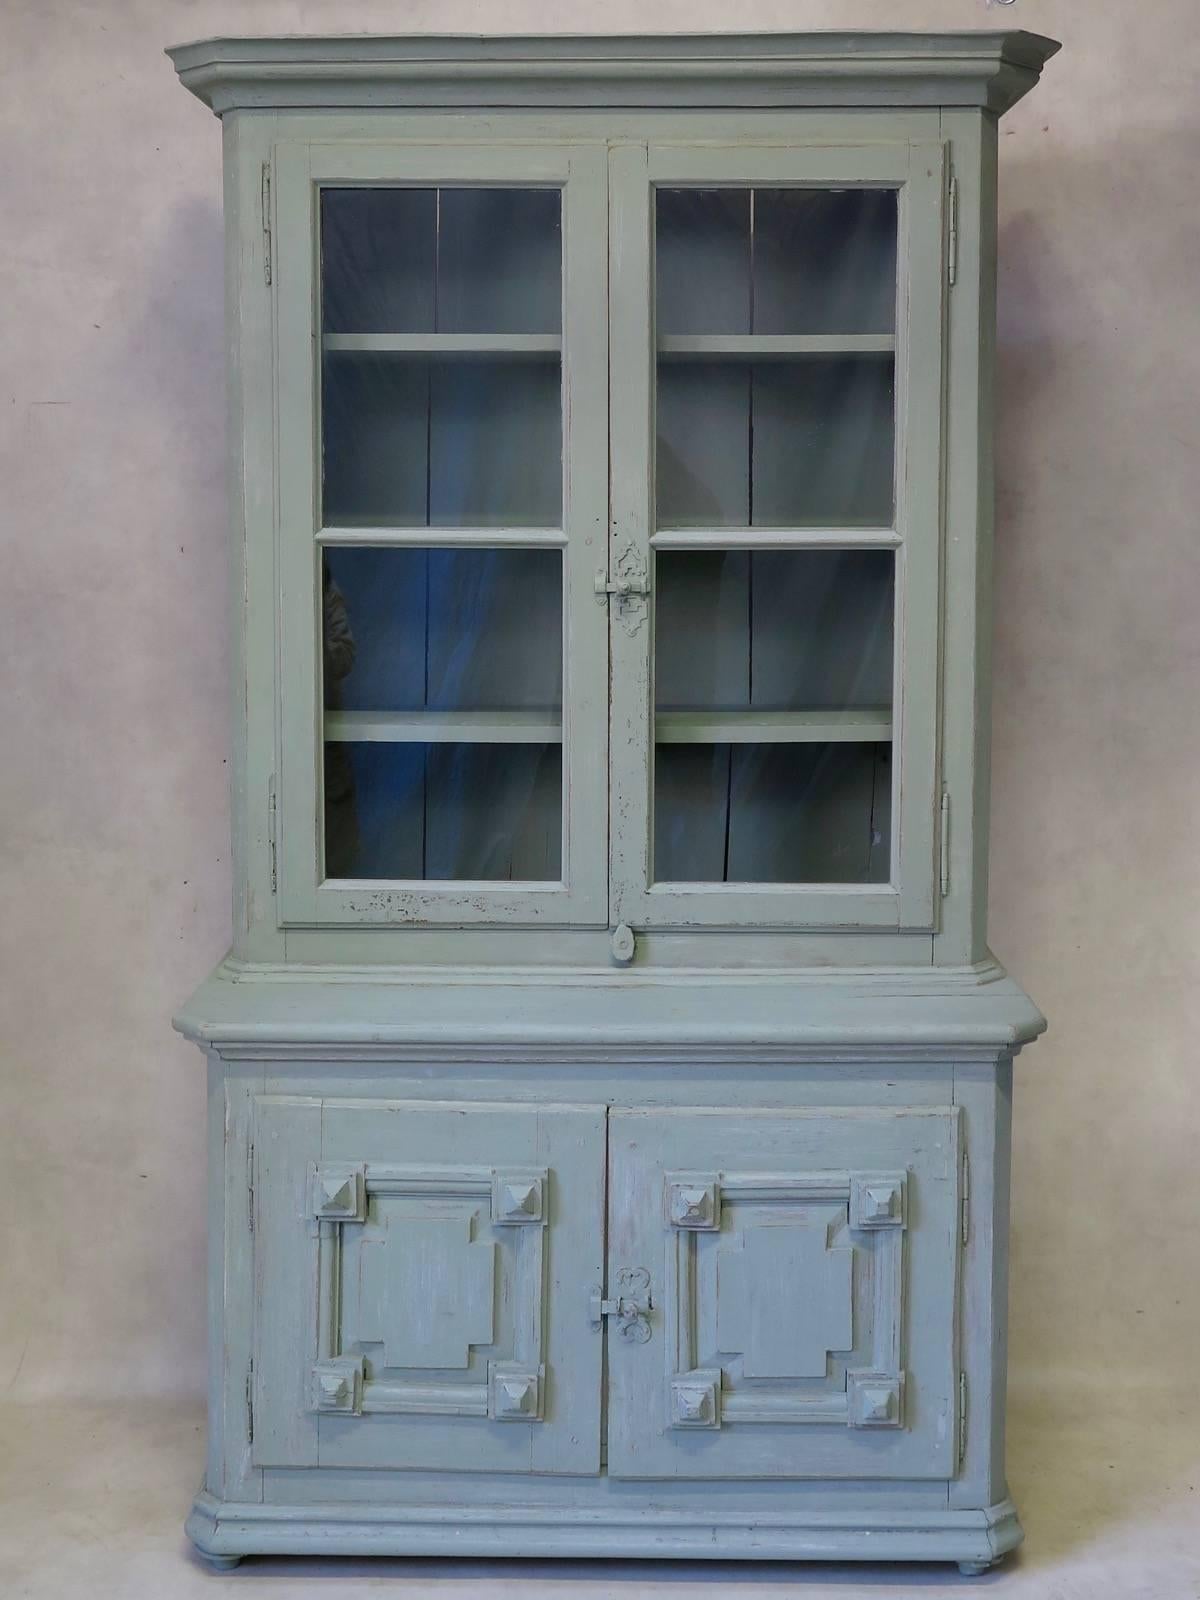 Charmante vitrine/présentoir en bois de pin peint, en deux parties. La partie supérieure comporte des vitres et la partie inférieure, deux portes avec des détails en forme de diamant.